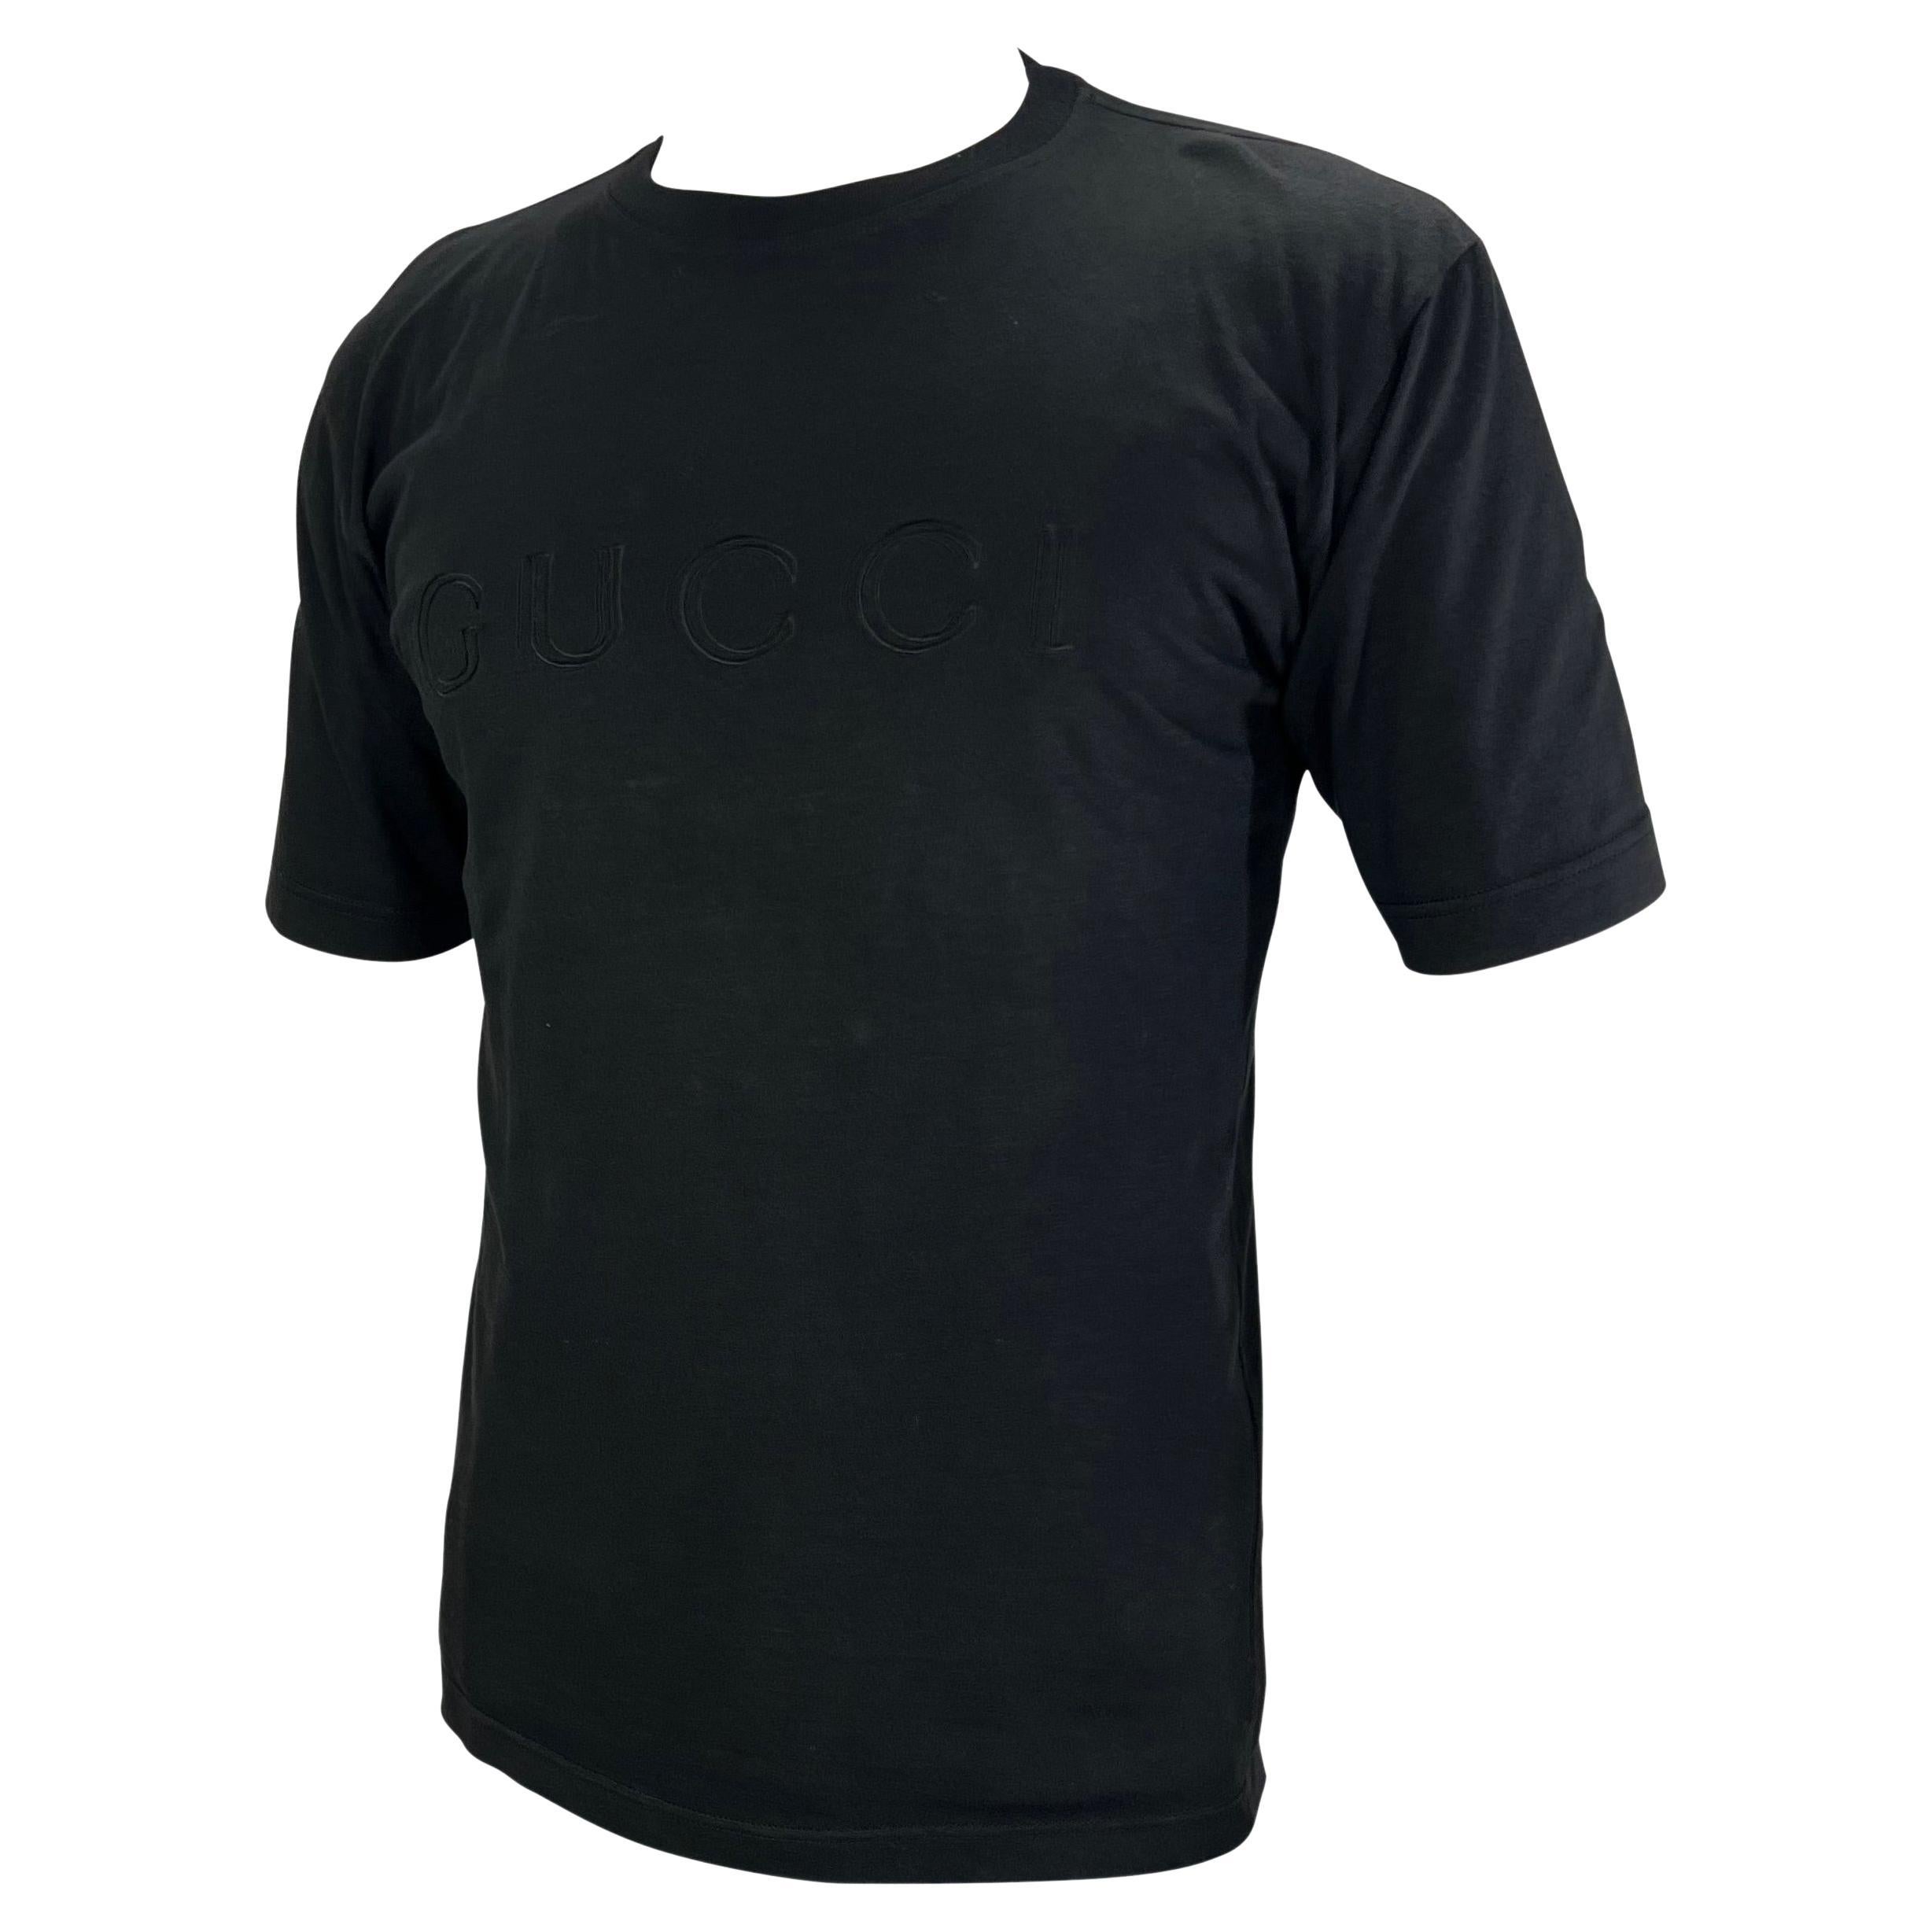 Présentation d'un t-shirt noir avec logo Gucci, dessiné par Tom Ford. Datant de 1996, ce t-shirt noir est parfaitement rehaussé par la présence de Gucci en toutes lettres sur la poitrine. Cette chemise Gucci by Tom Ford incontournable est la pièce